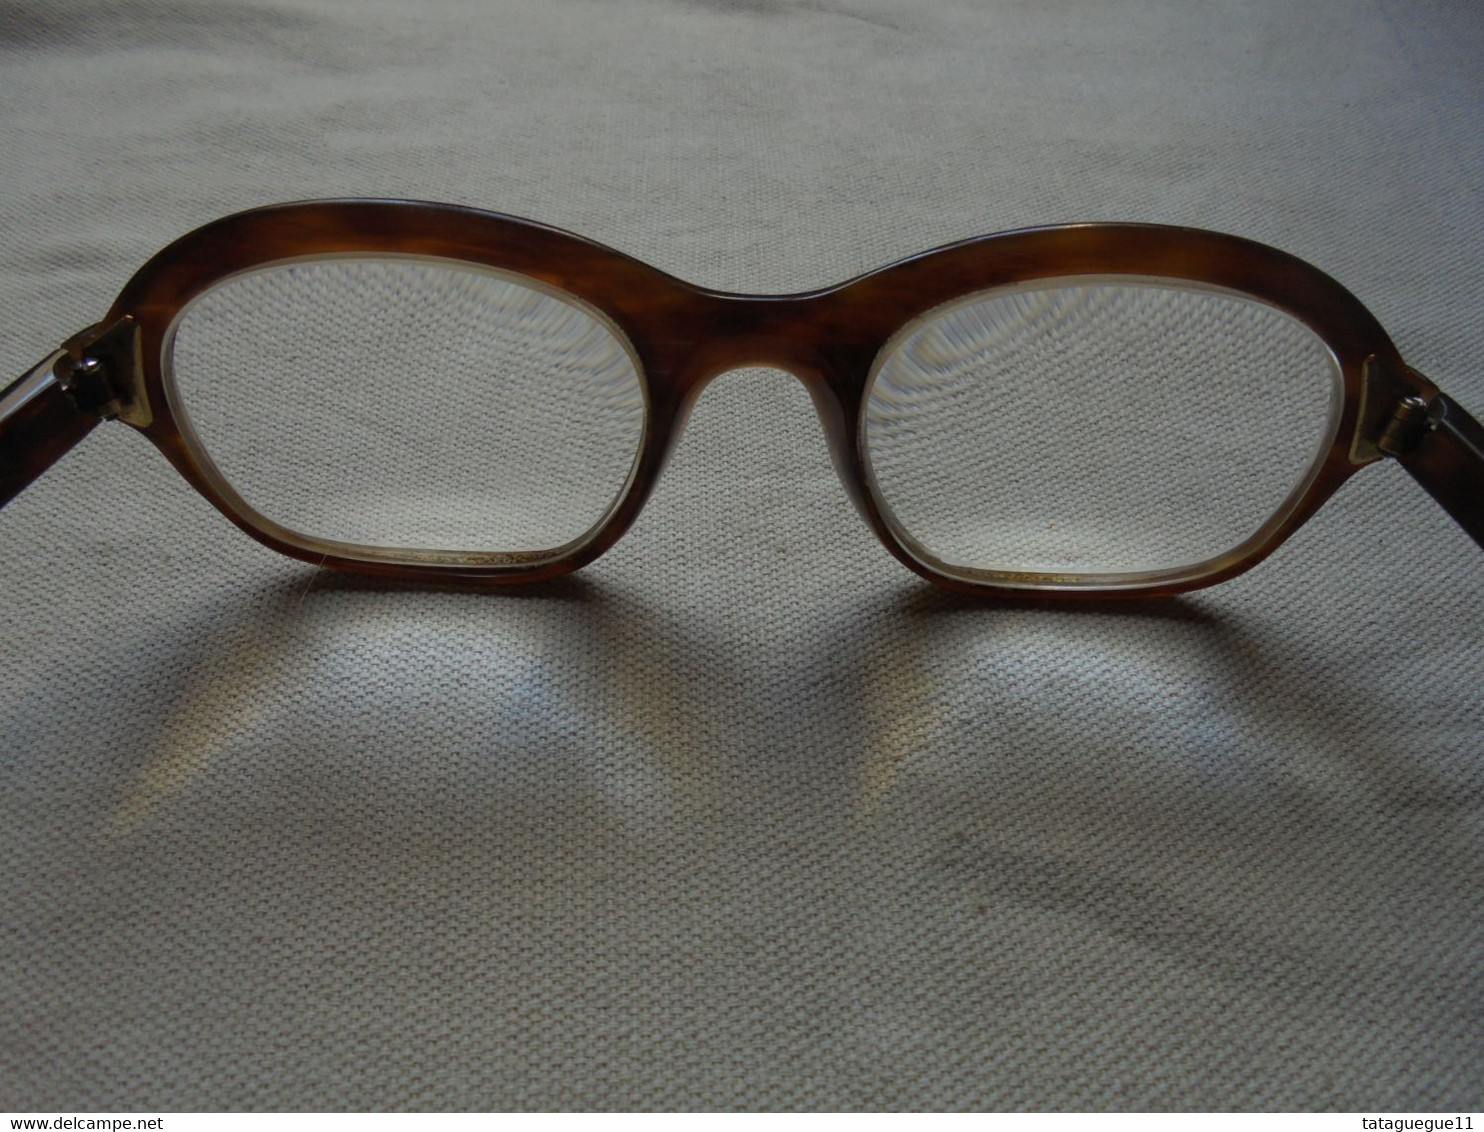 Vintage - Paire De Lunettes De Vue Charles Henry Faubourg St Honorè Paris Femme - Glasses